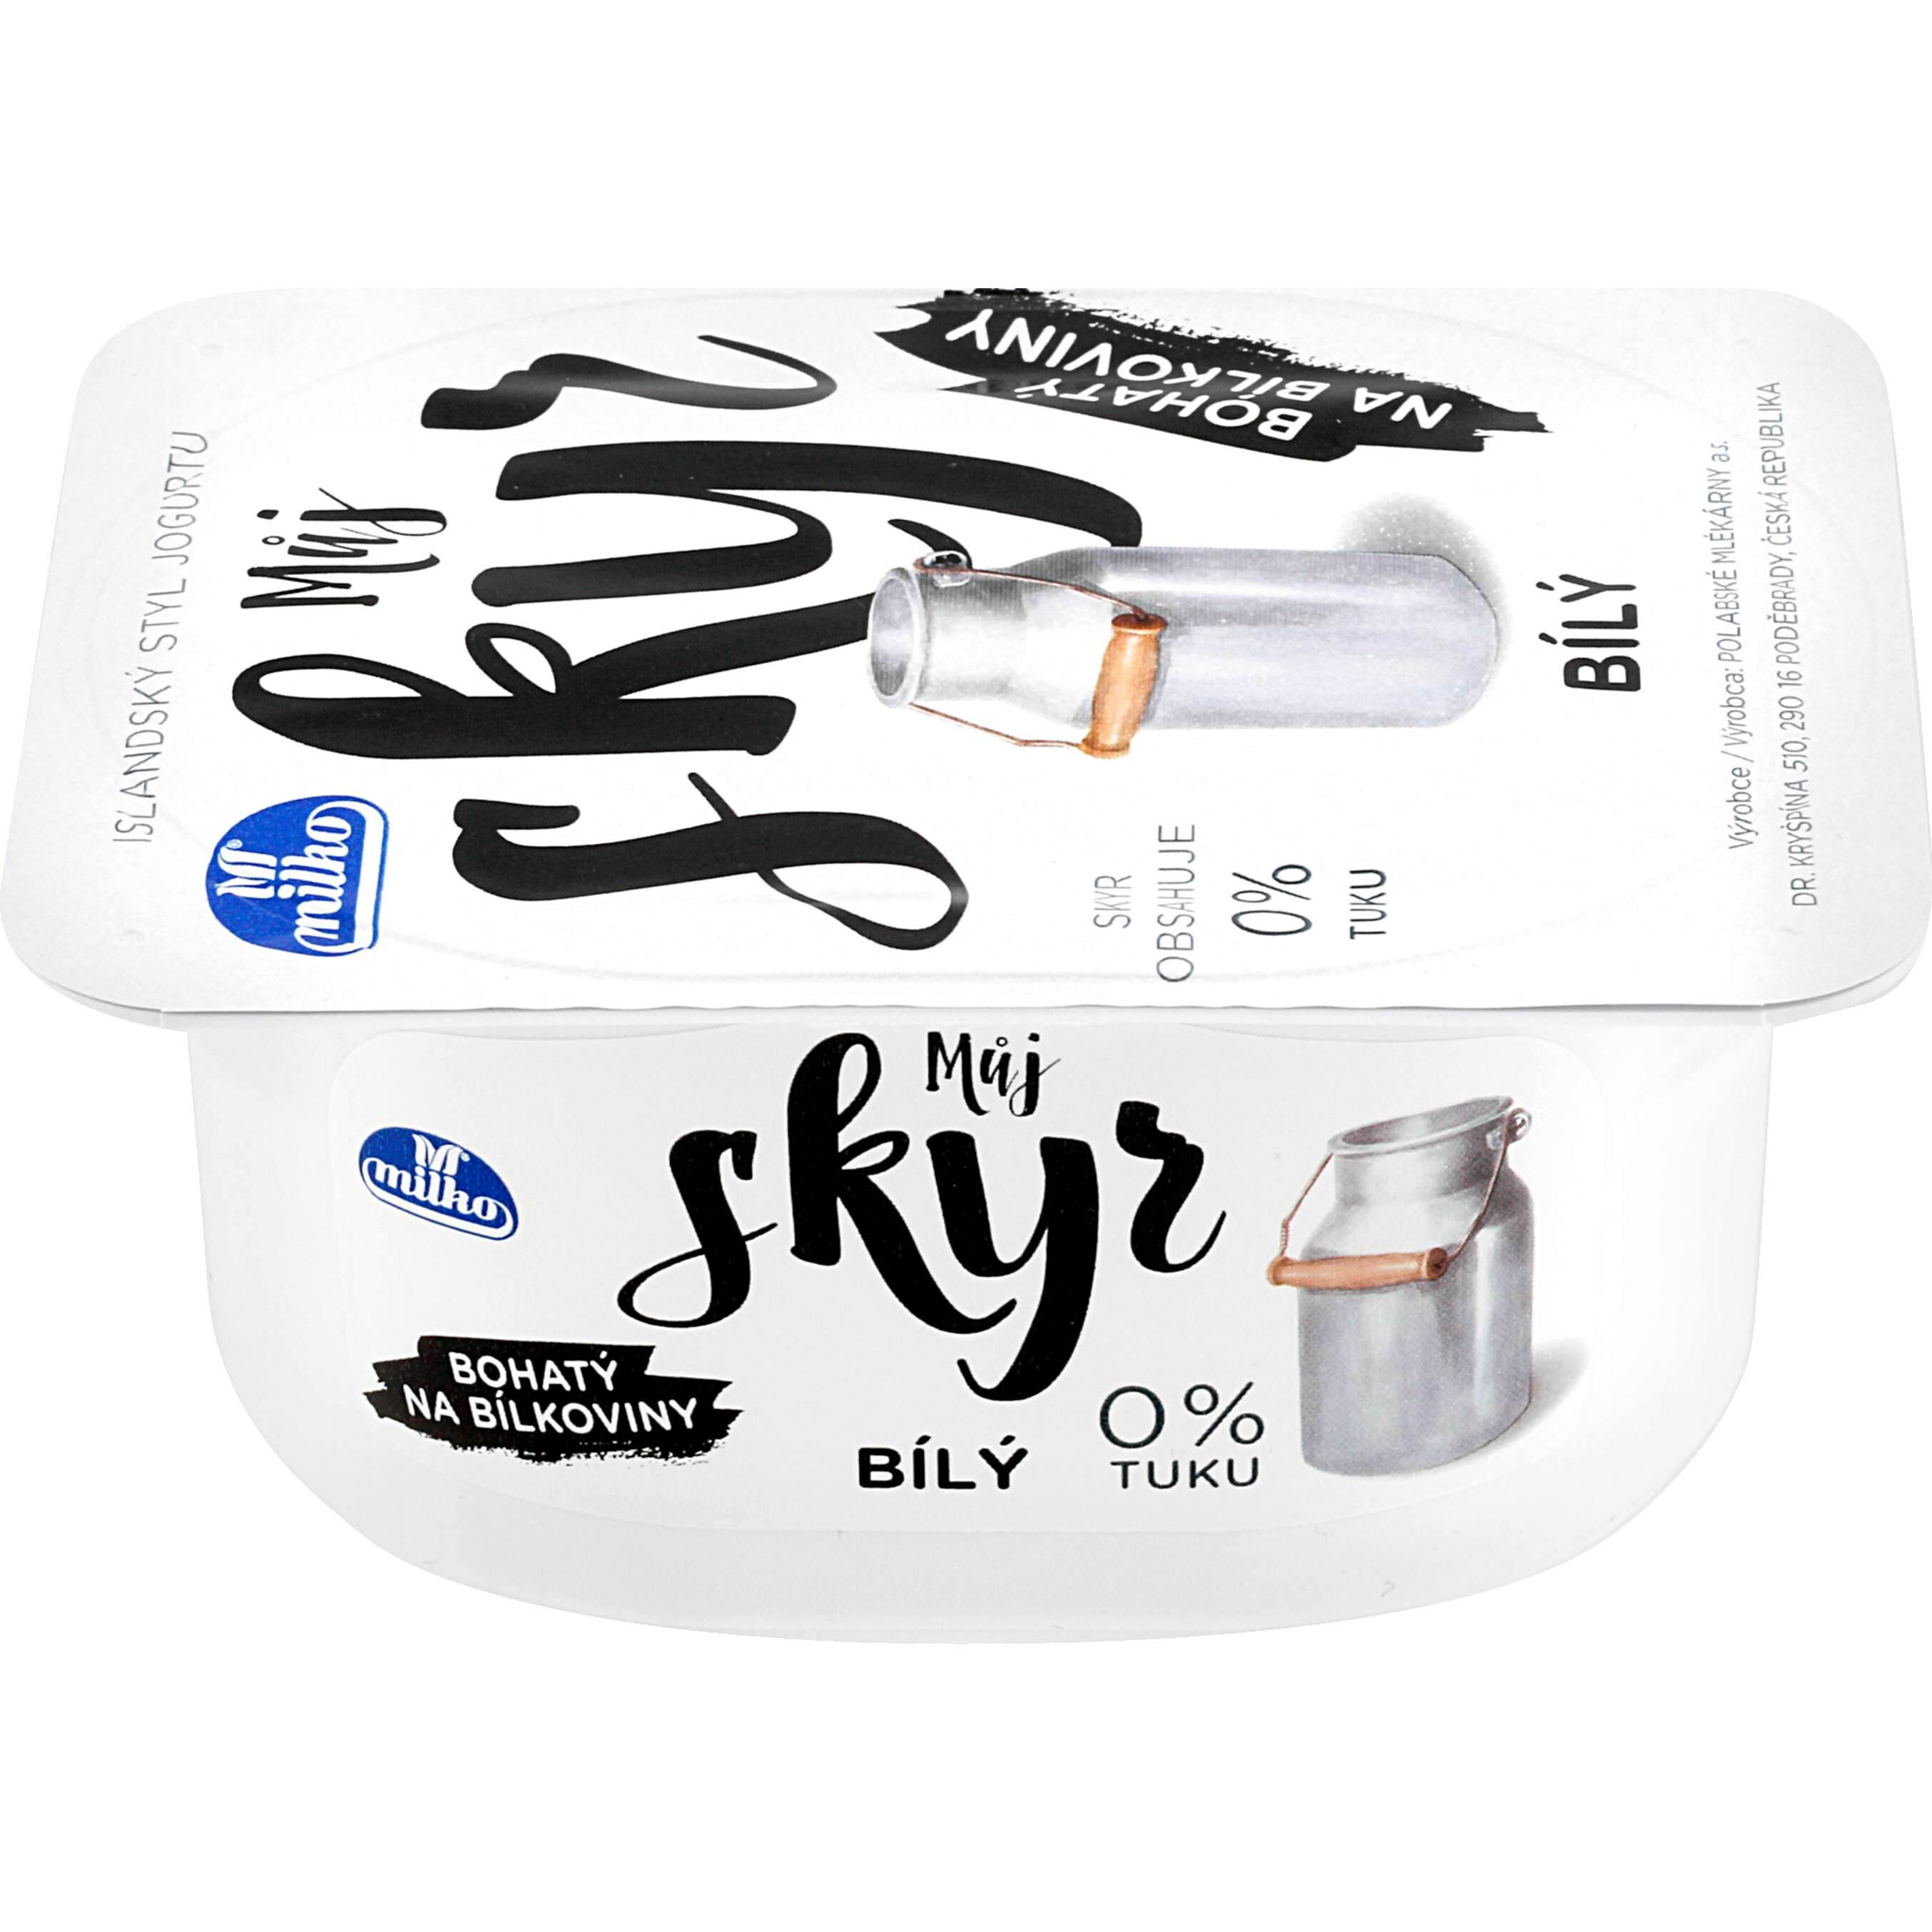 Zobrazit nabídku Můj Skyr Jogurt islandského typu